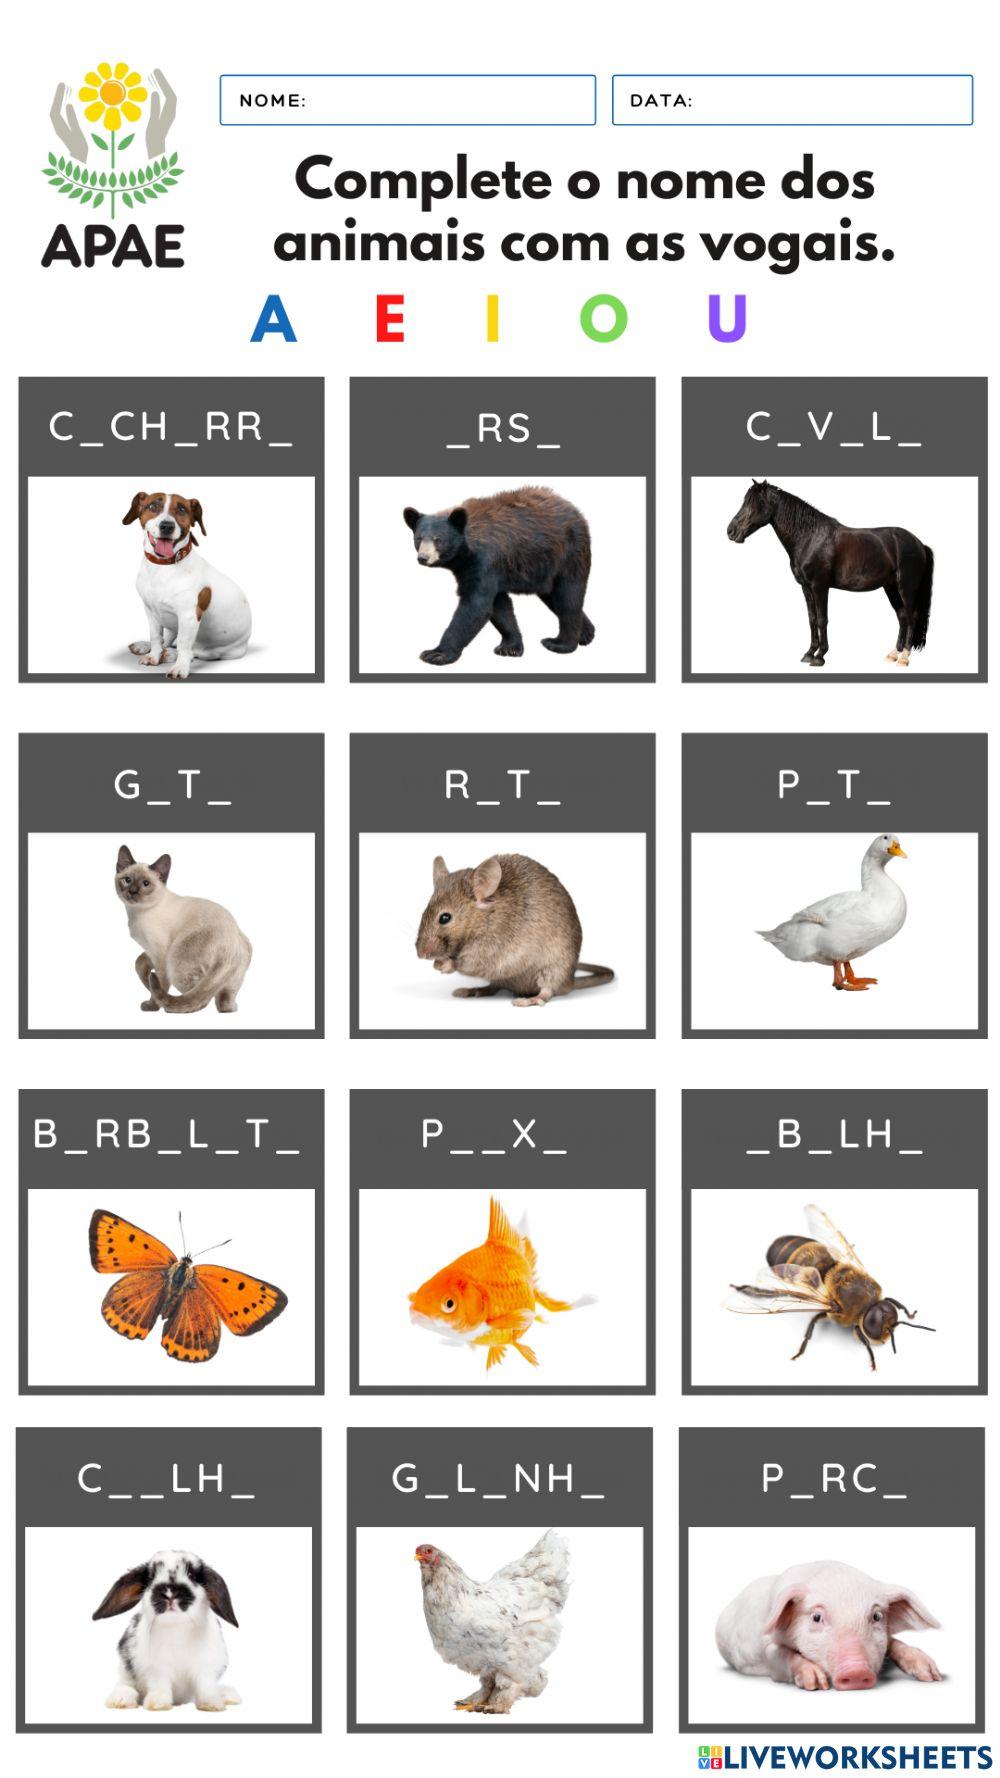 Complete o nome dos animais com as vogais